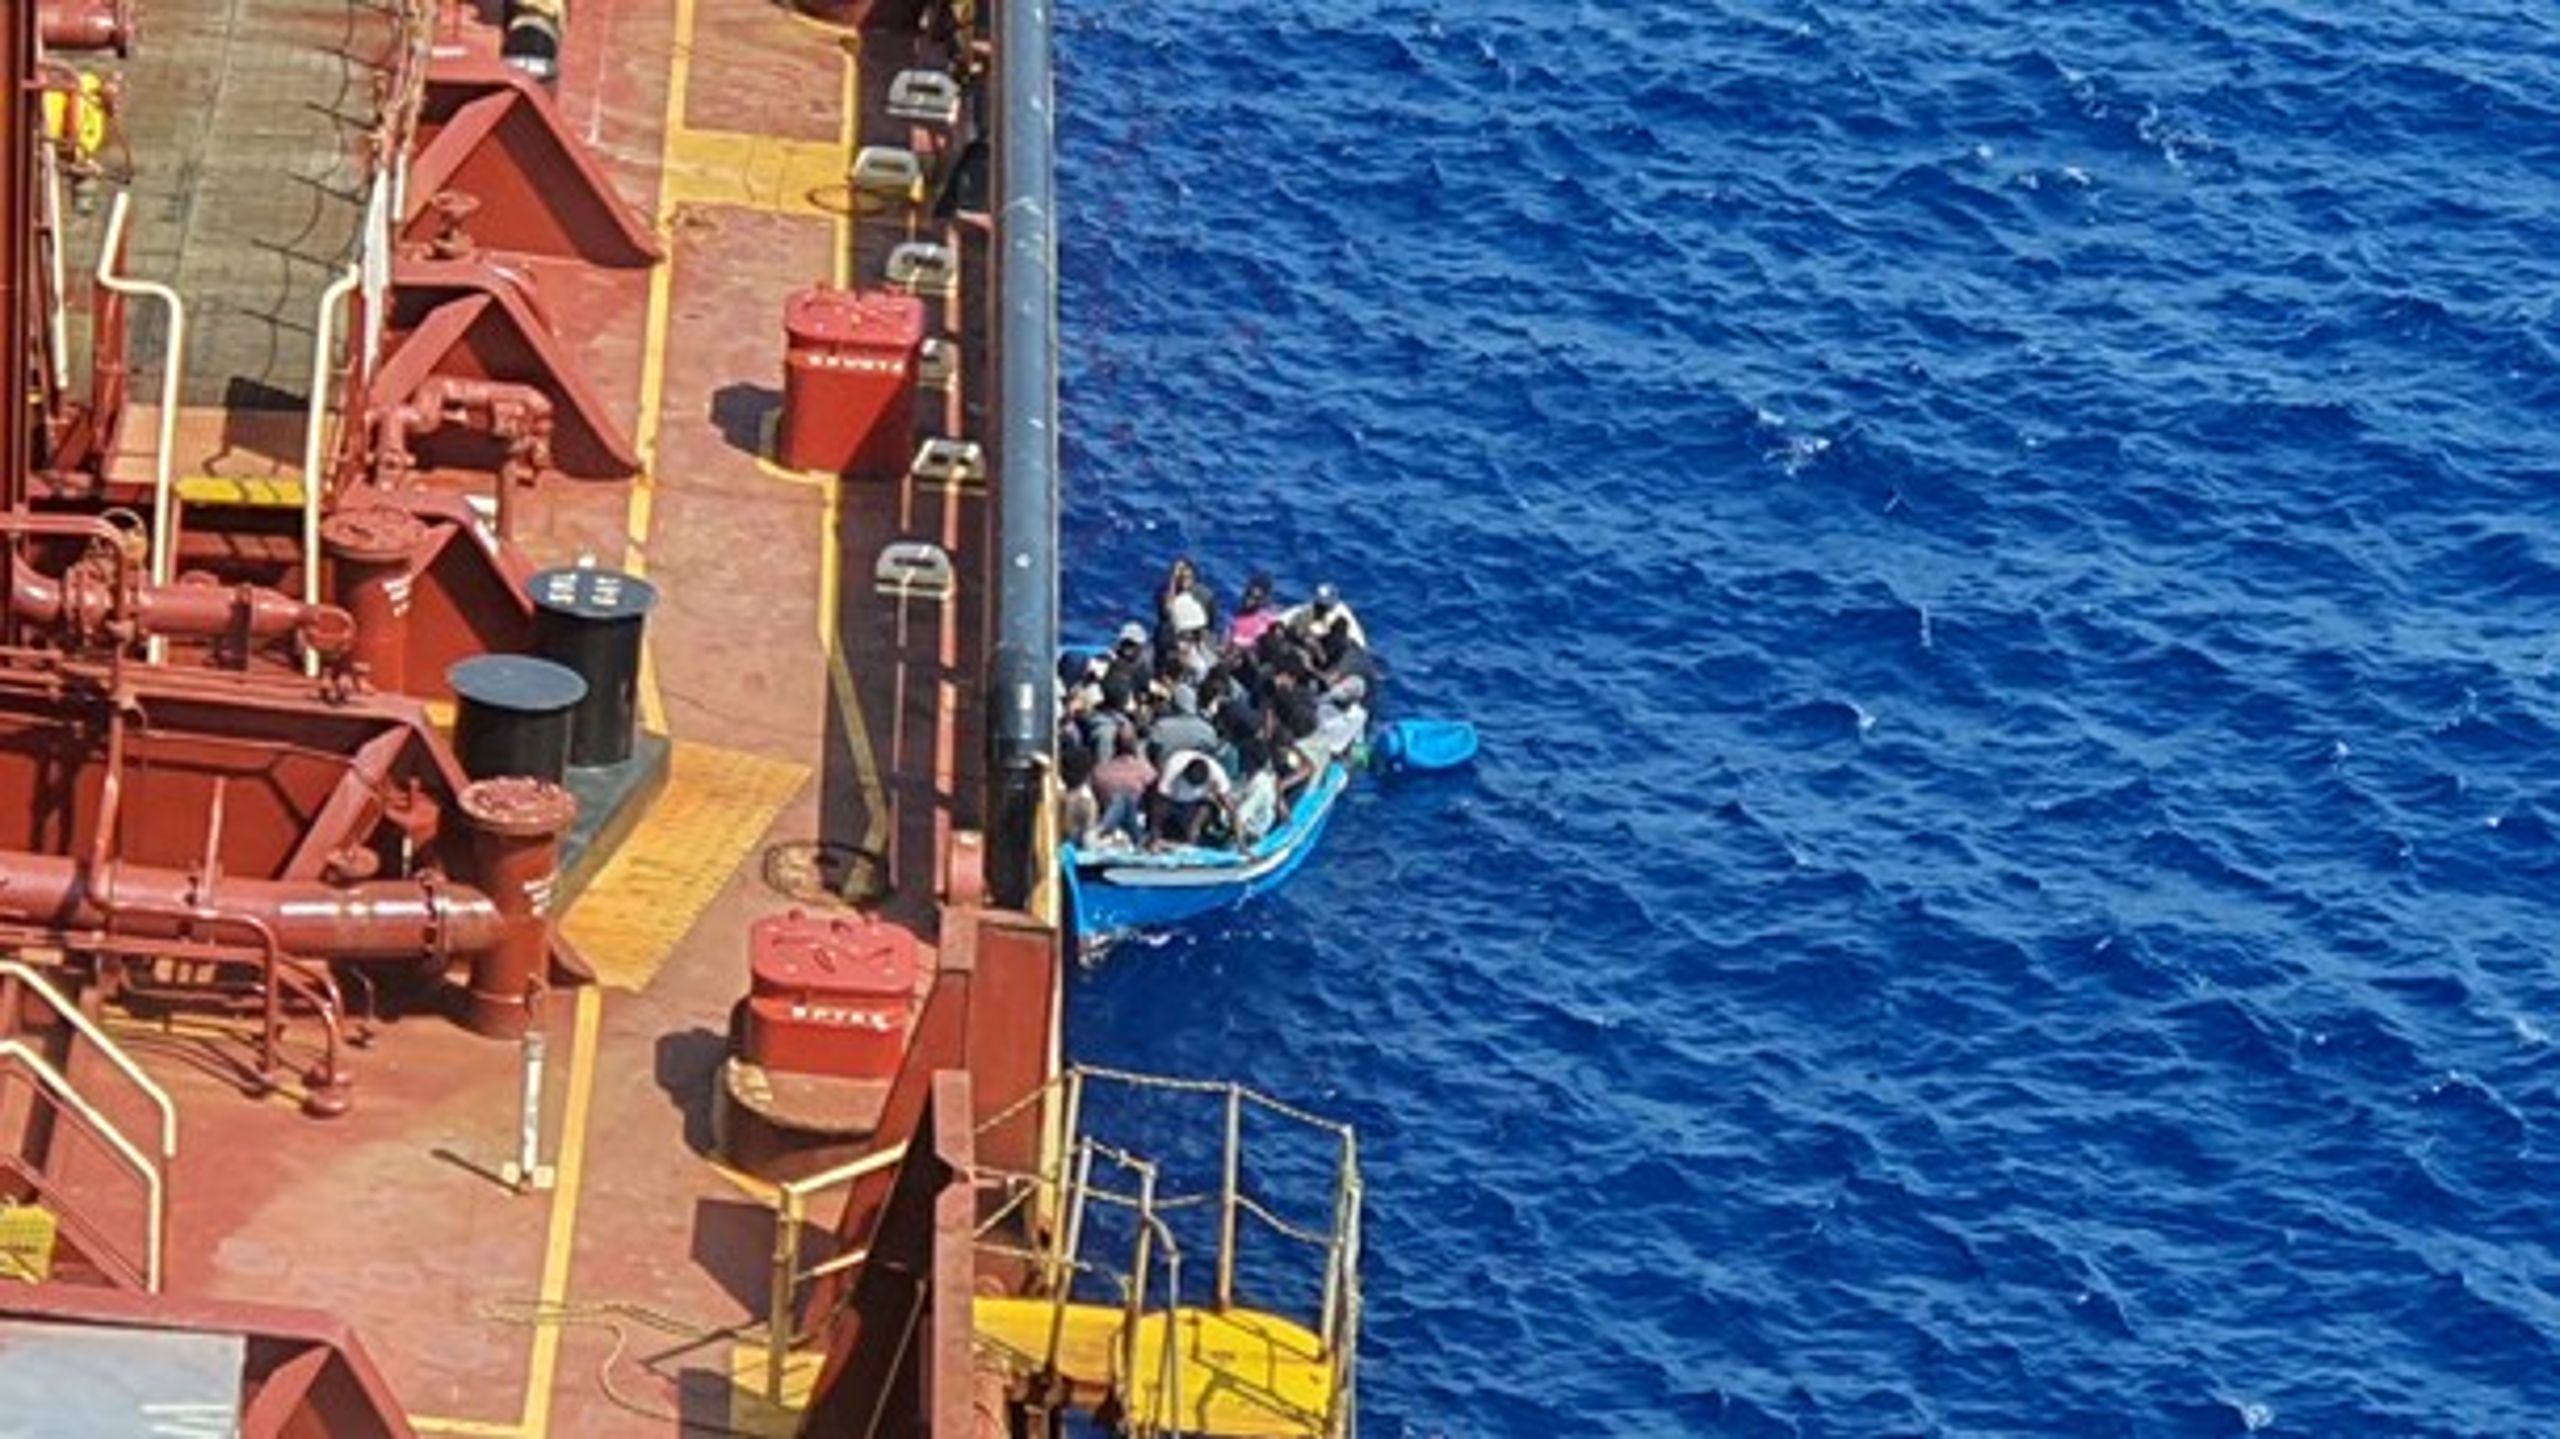 Mærsk Etienne samlede i august 2020 27 migranter op i Middelhavet, og først 38 dage senere lykkedes det at få sat dem i land med hjælp fra en NGO.